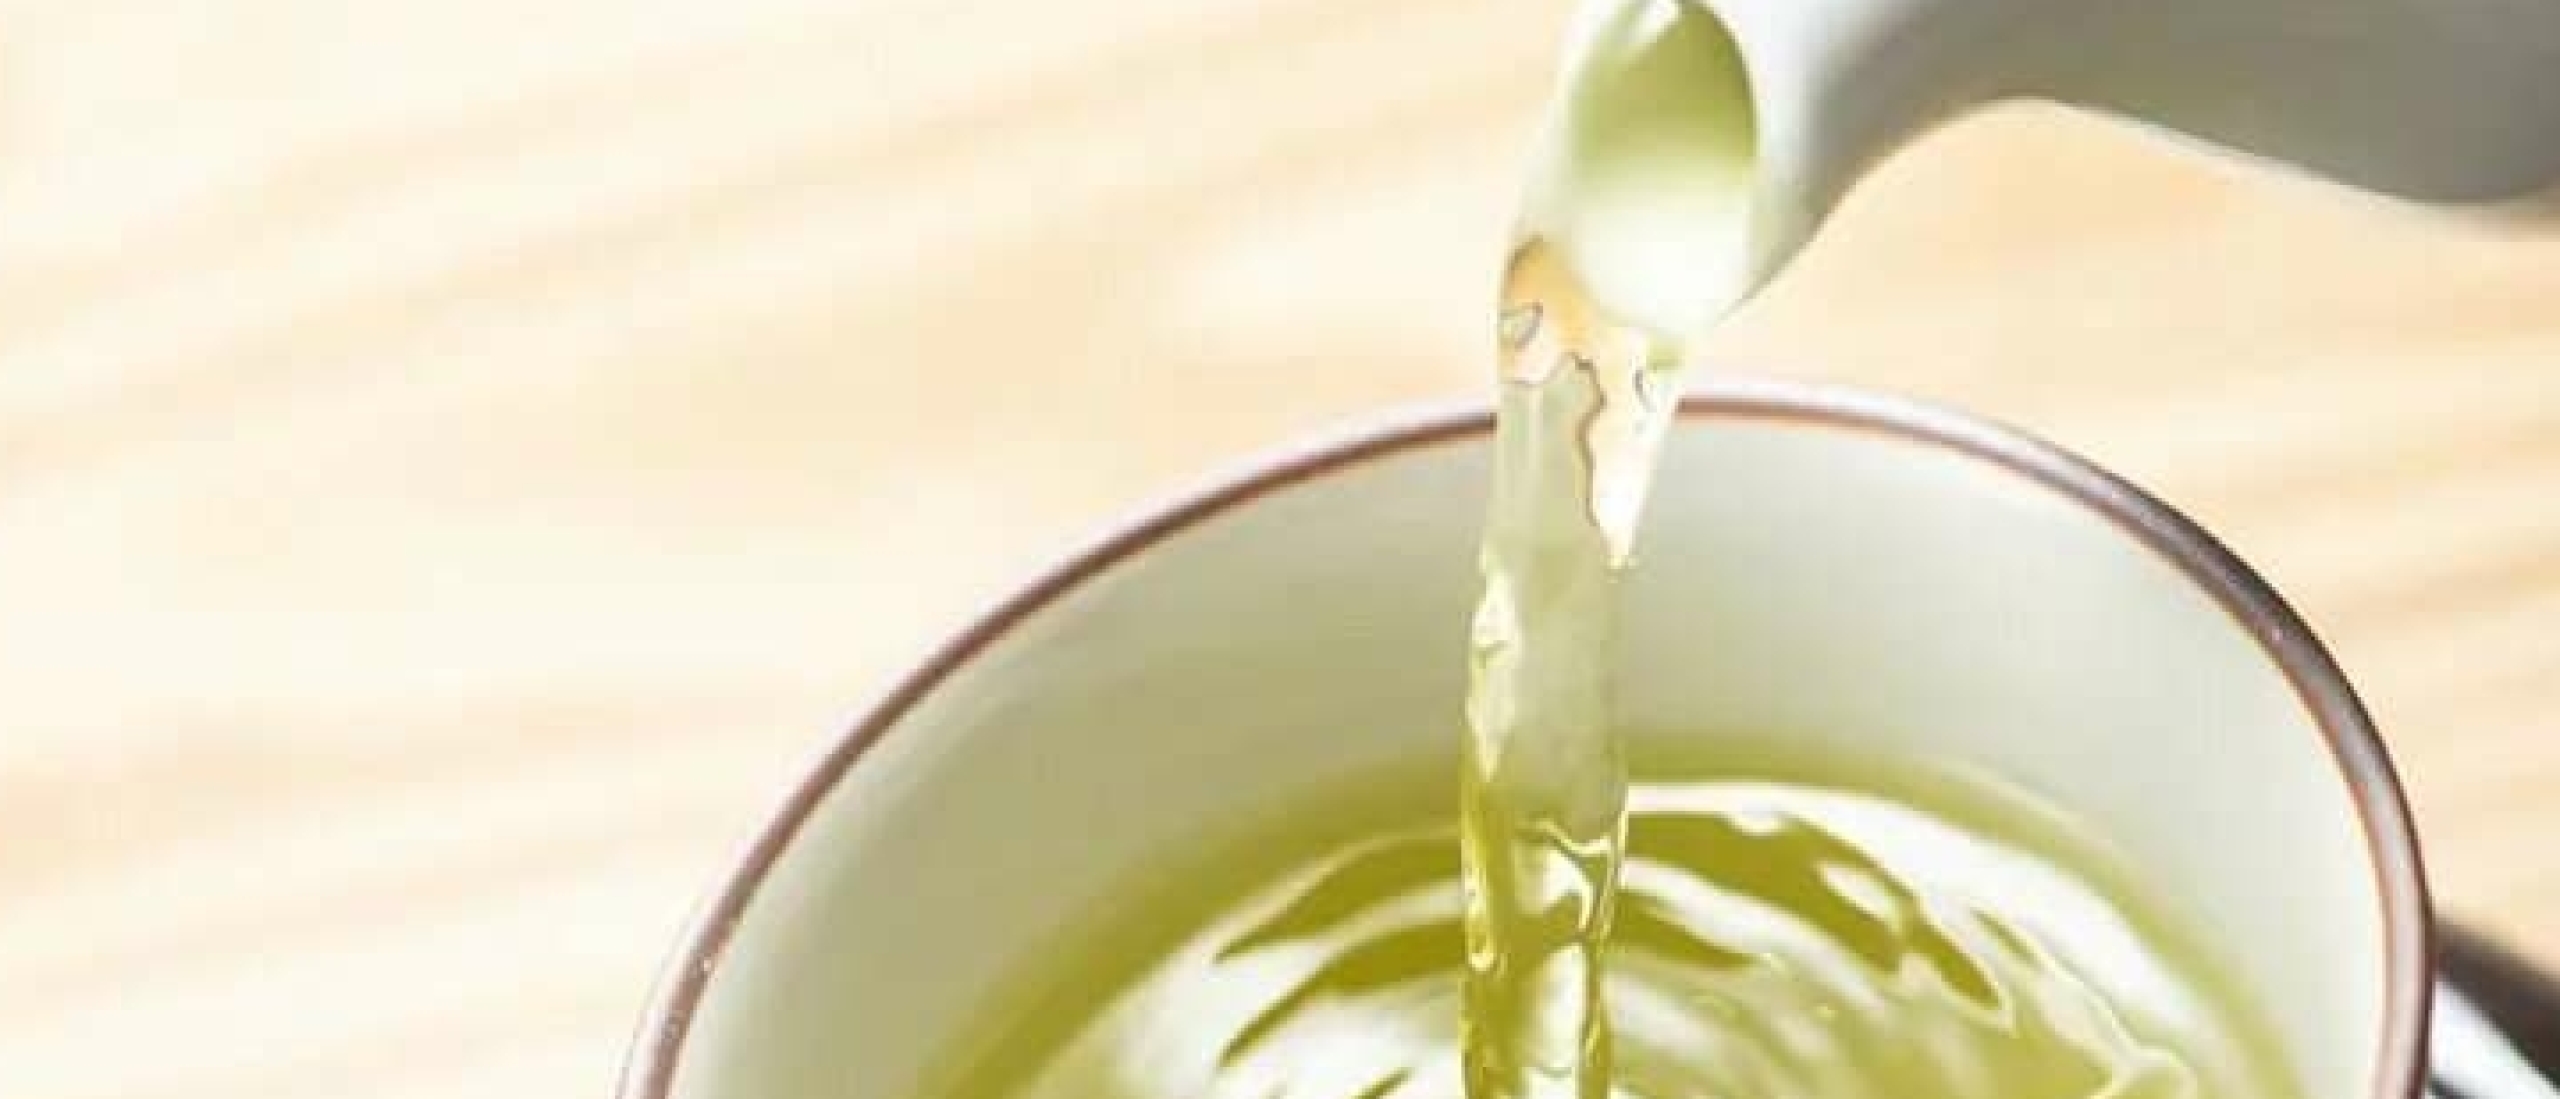 10 gezondheids voordelen van groene thee | Waarom je het iedere dag zou moeten drinken!